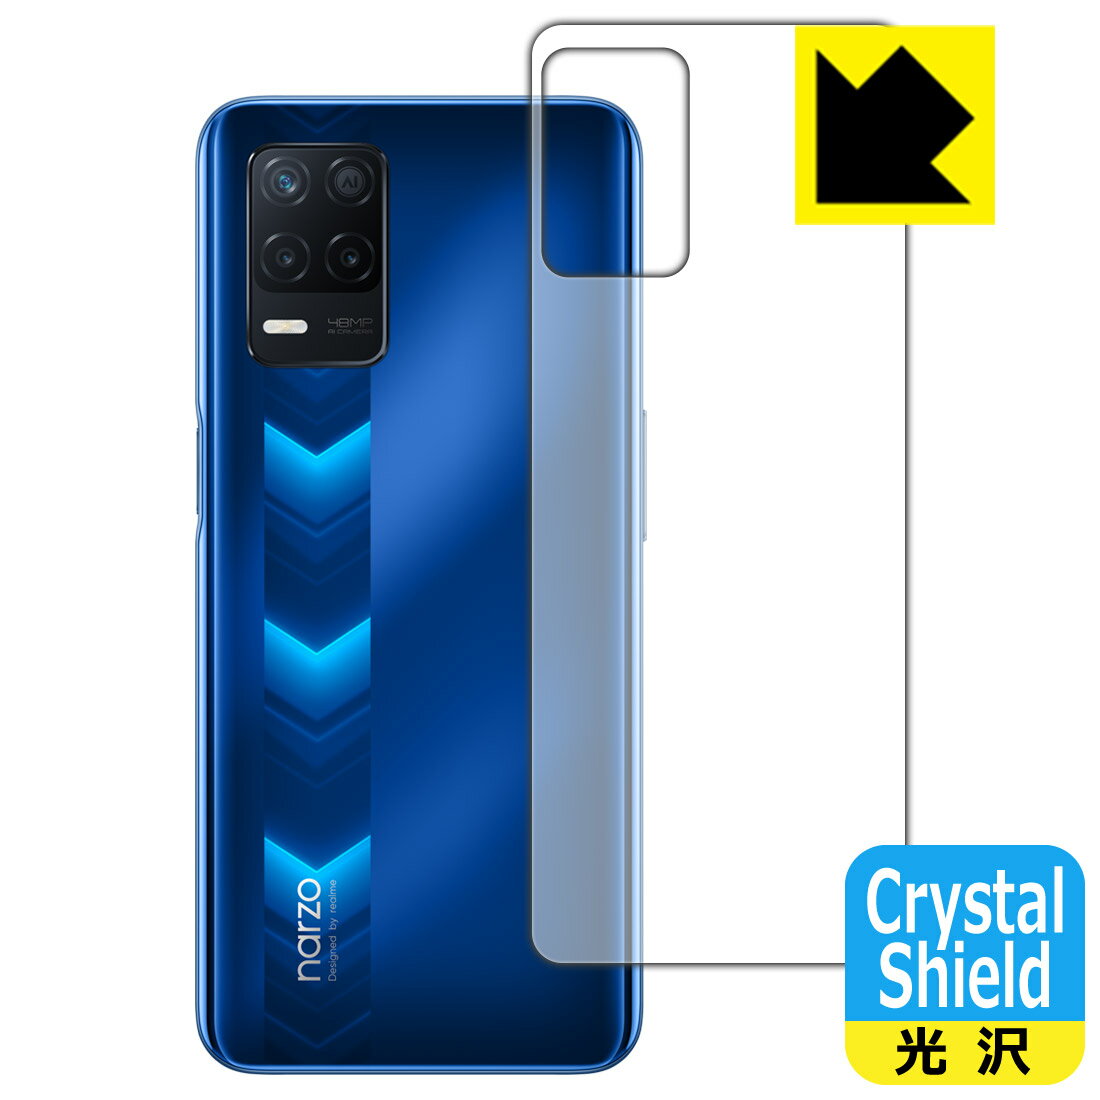 Crystal Shield realme narzo 30 5G (背面のみ) 3枚セット 日本製 自社製造直販